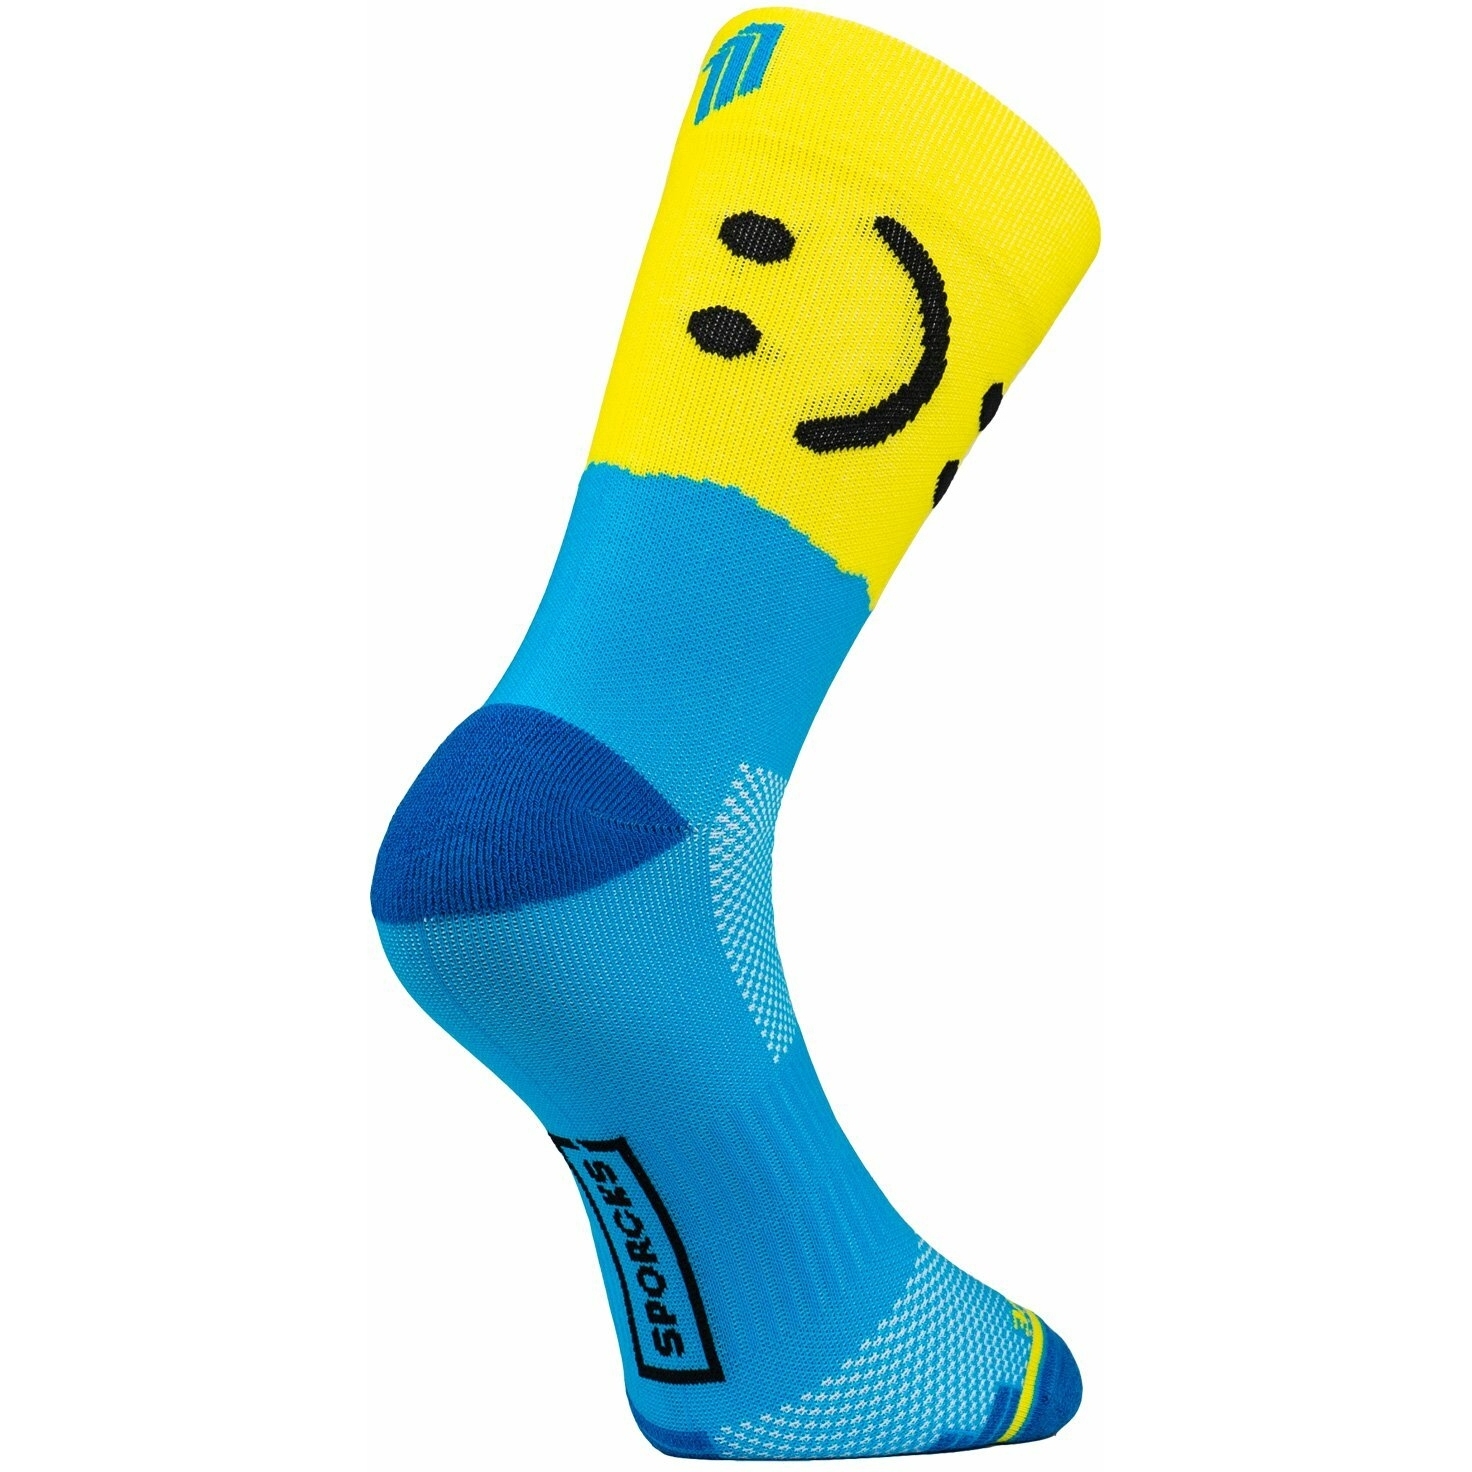 Produktbild von SPORCKS Running Socken - Maximo